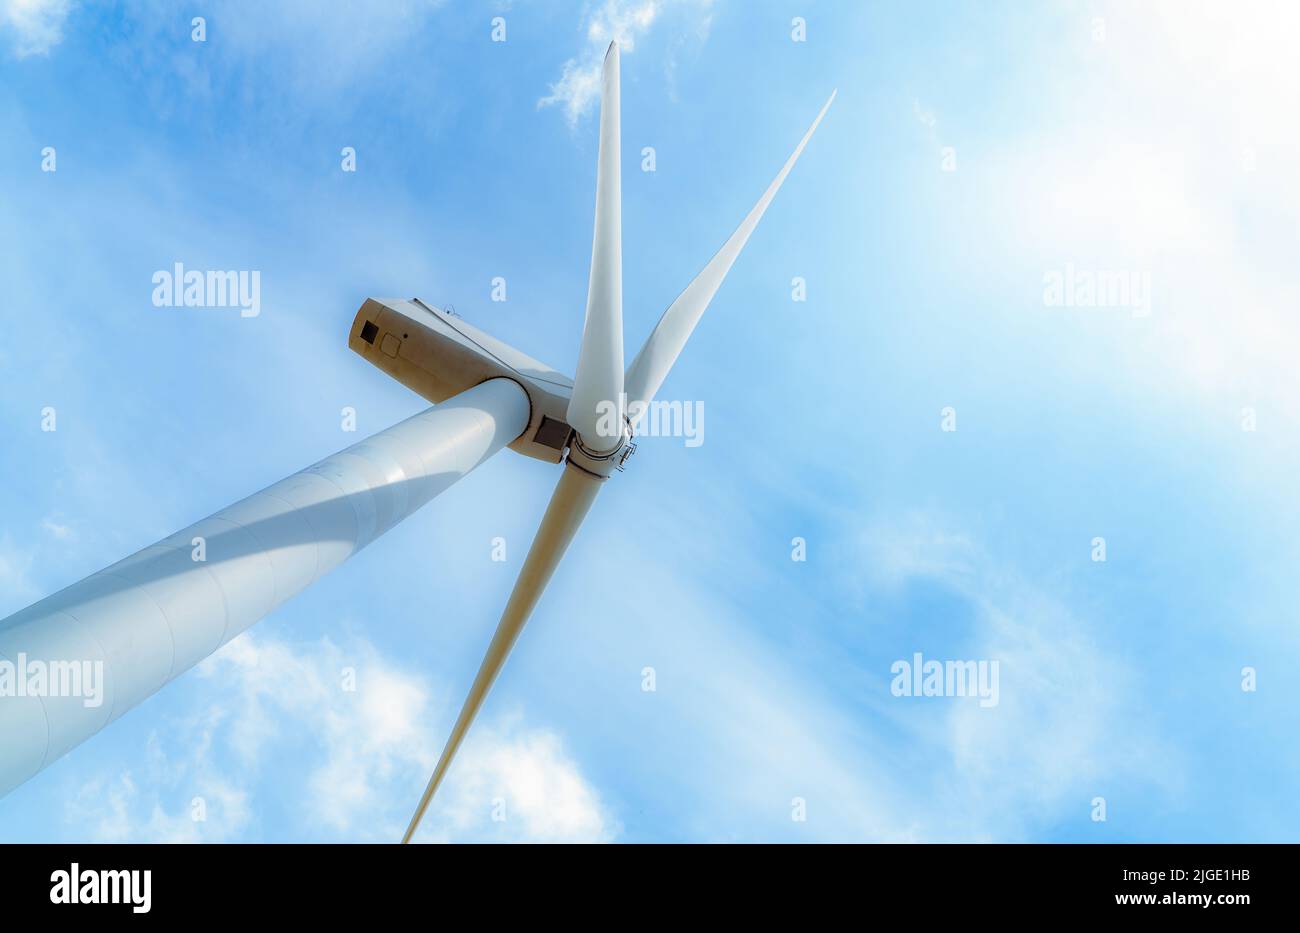 Energía eólica. Energía eólica. Energía sostenible y renovable. Los aerogeneradores generan electricidad. Molino de viento contra el cielo azul y la luz del sol. Tecnología ecológica. Foto de stock